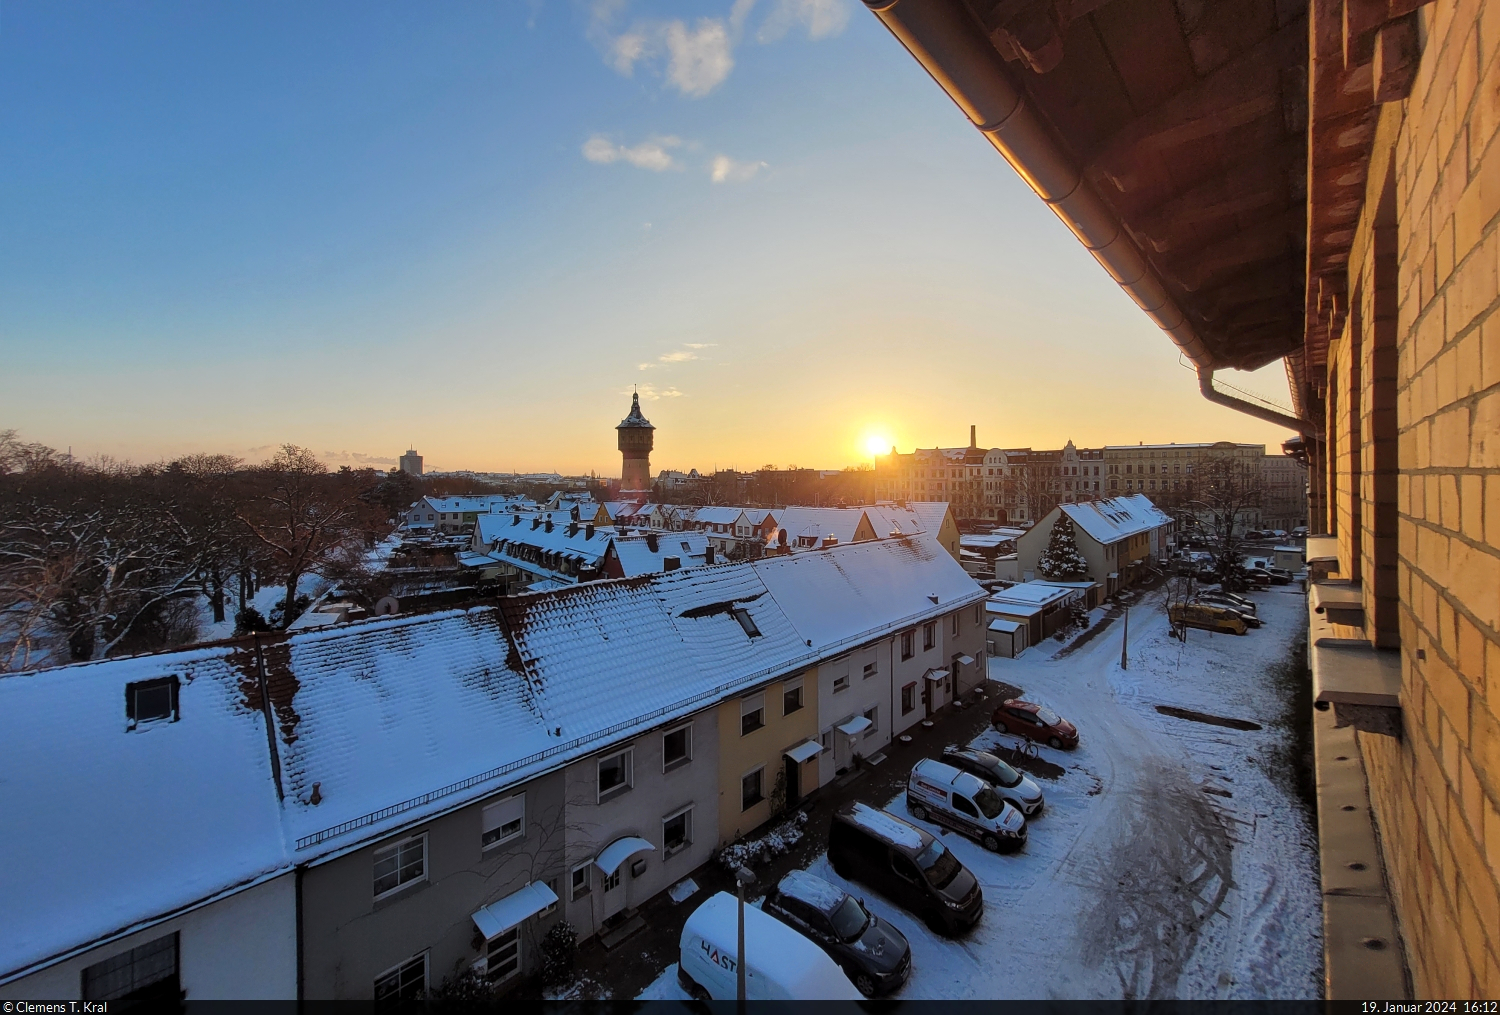 Eiskalter Sonnenuntergang am Thaerviertel in Halle (Saale), in Sichtweite zum Wasserturm Nord.

🕓 19.1.2024 | 16:12 Uhr